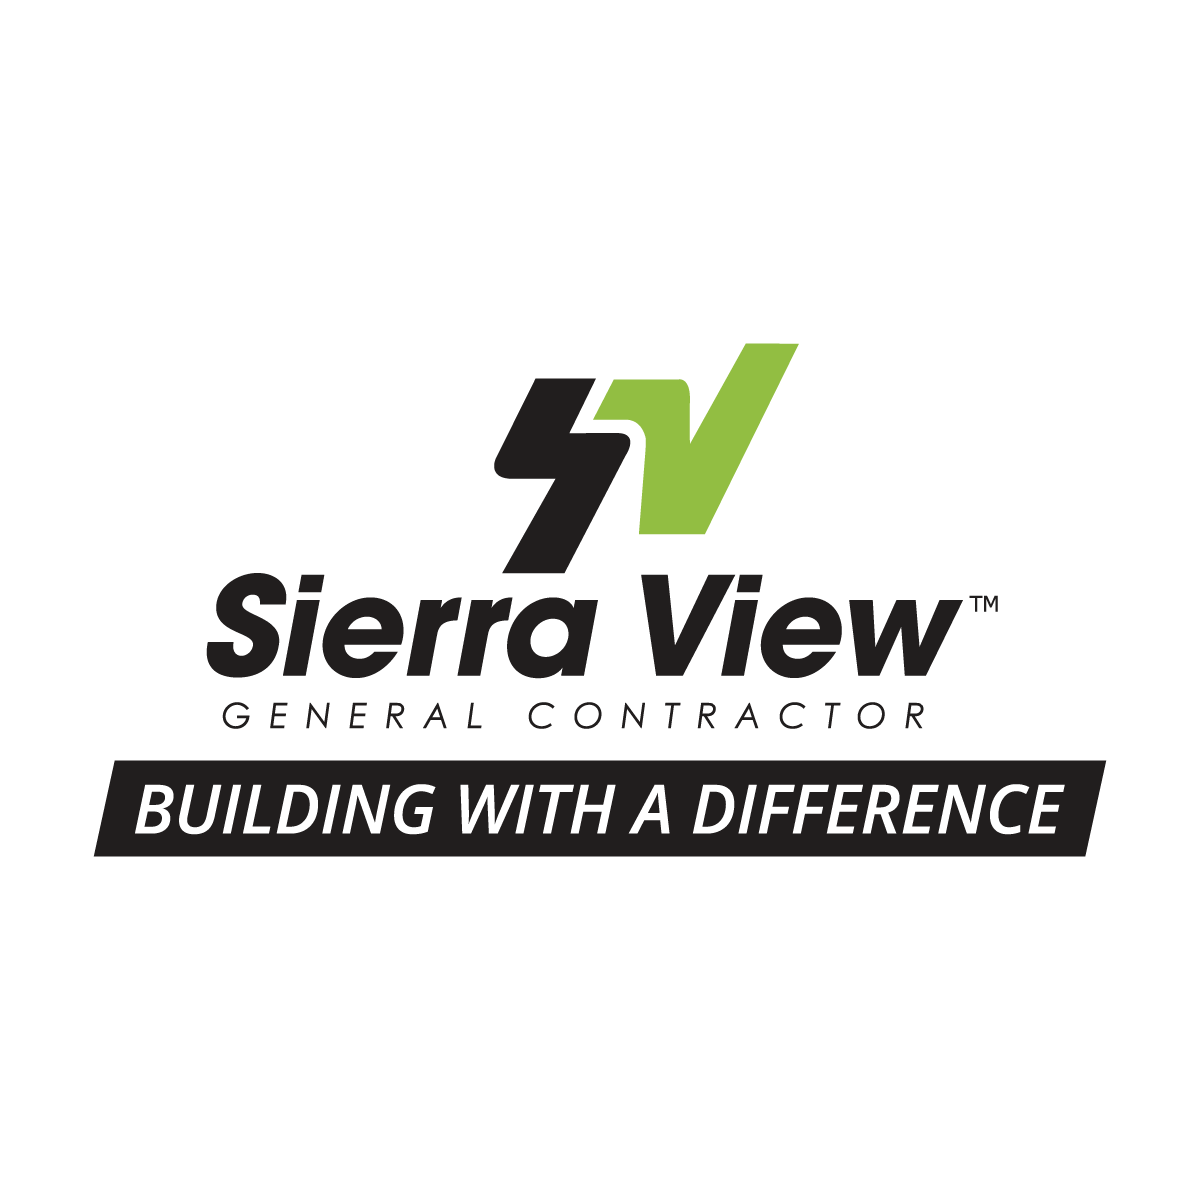 Sierra View General Contractor